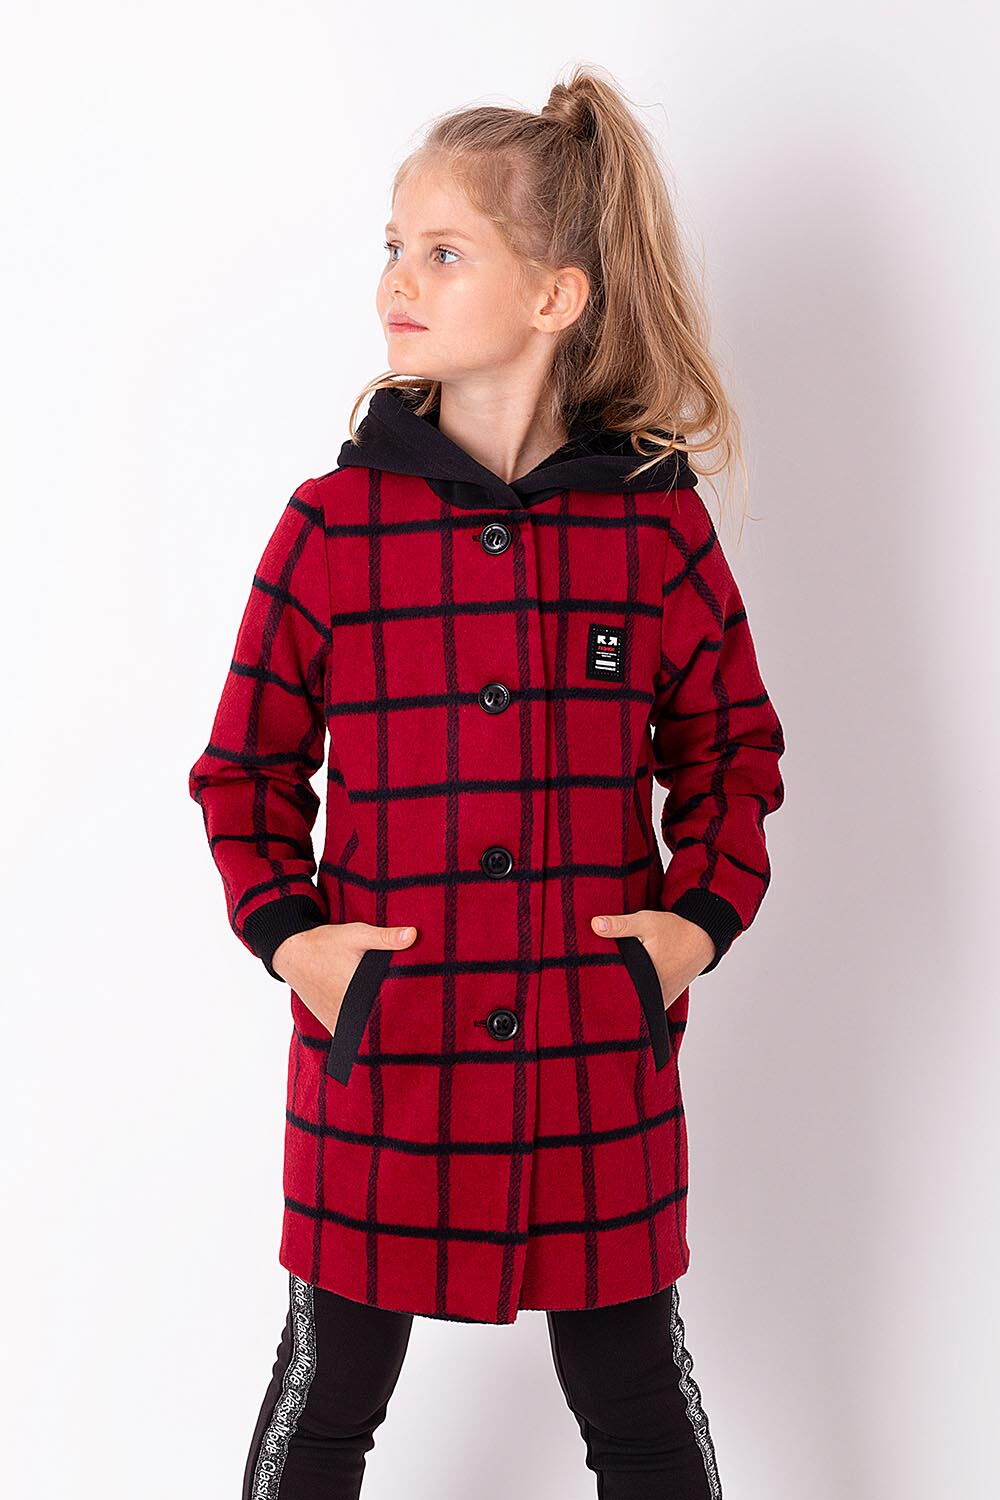 Пальто для девочки Mevis красное 3515-03 - цена